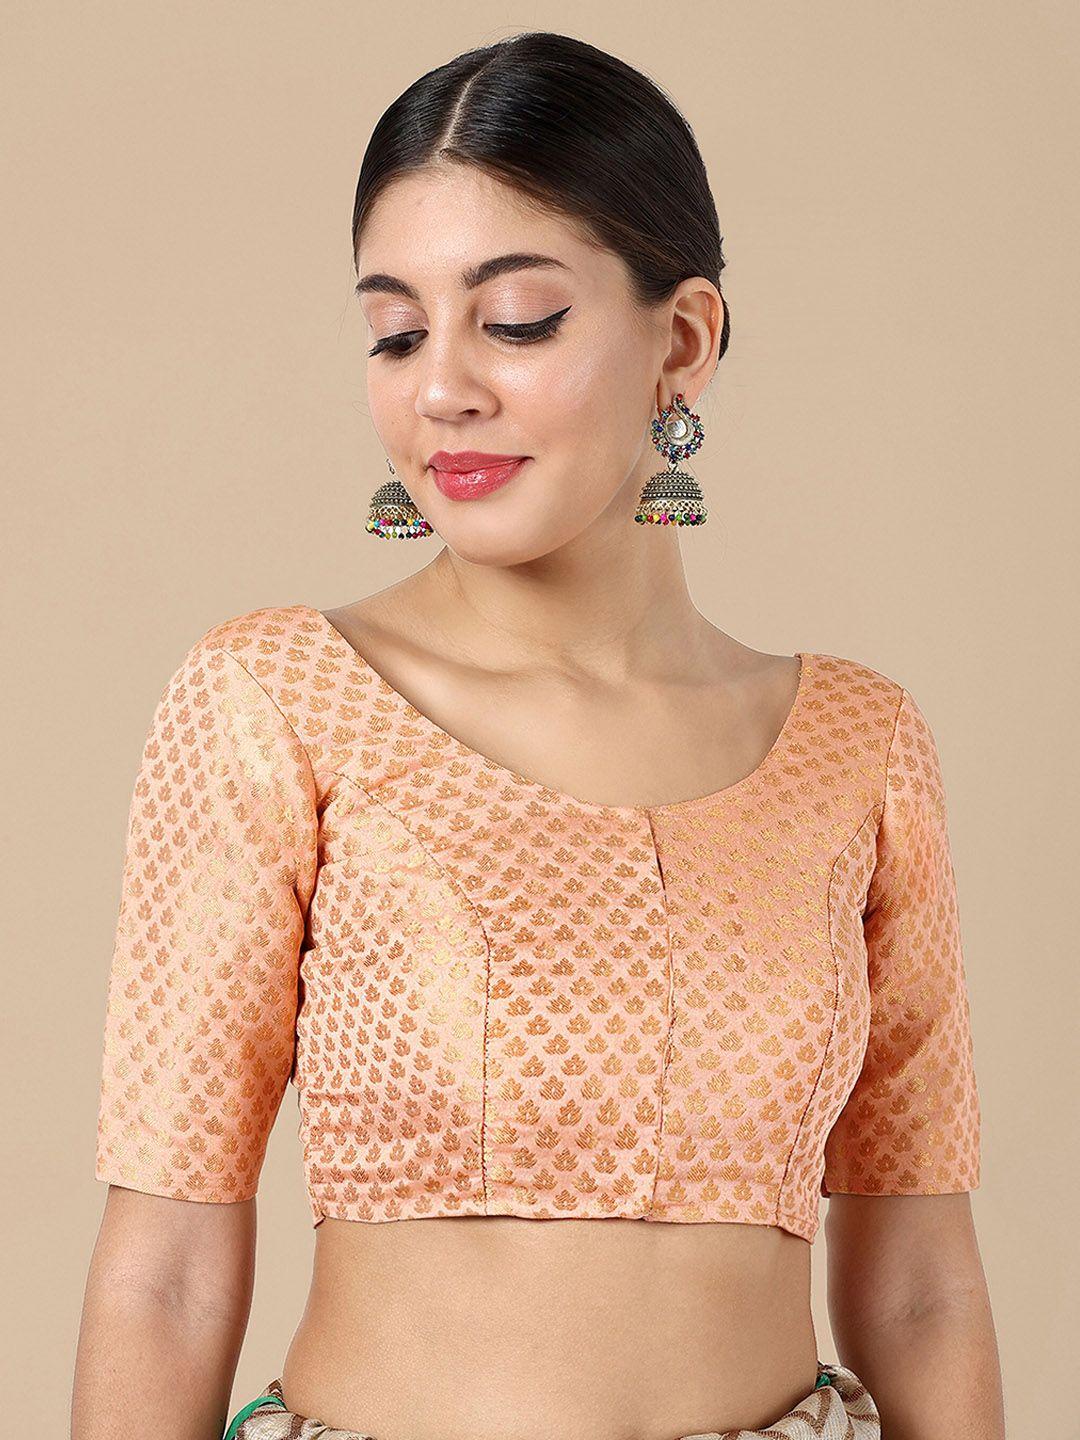 vardha woven design brocade datail saree blouse